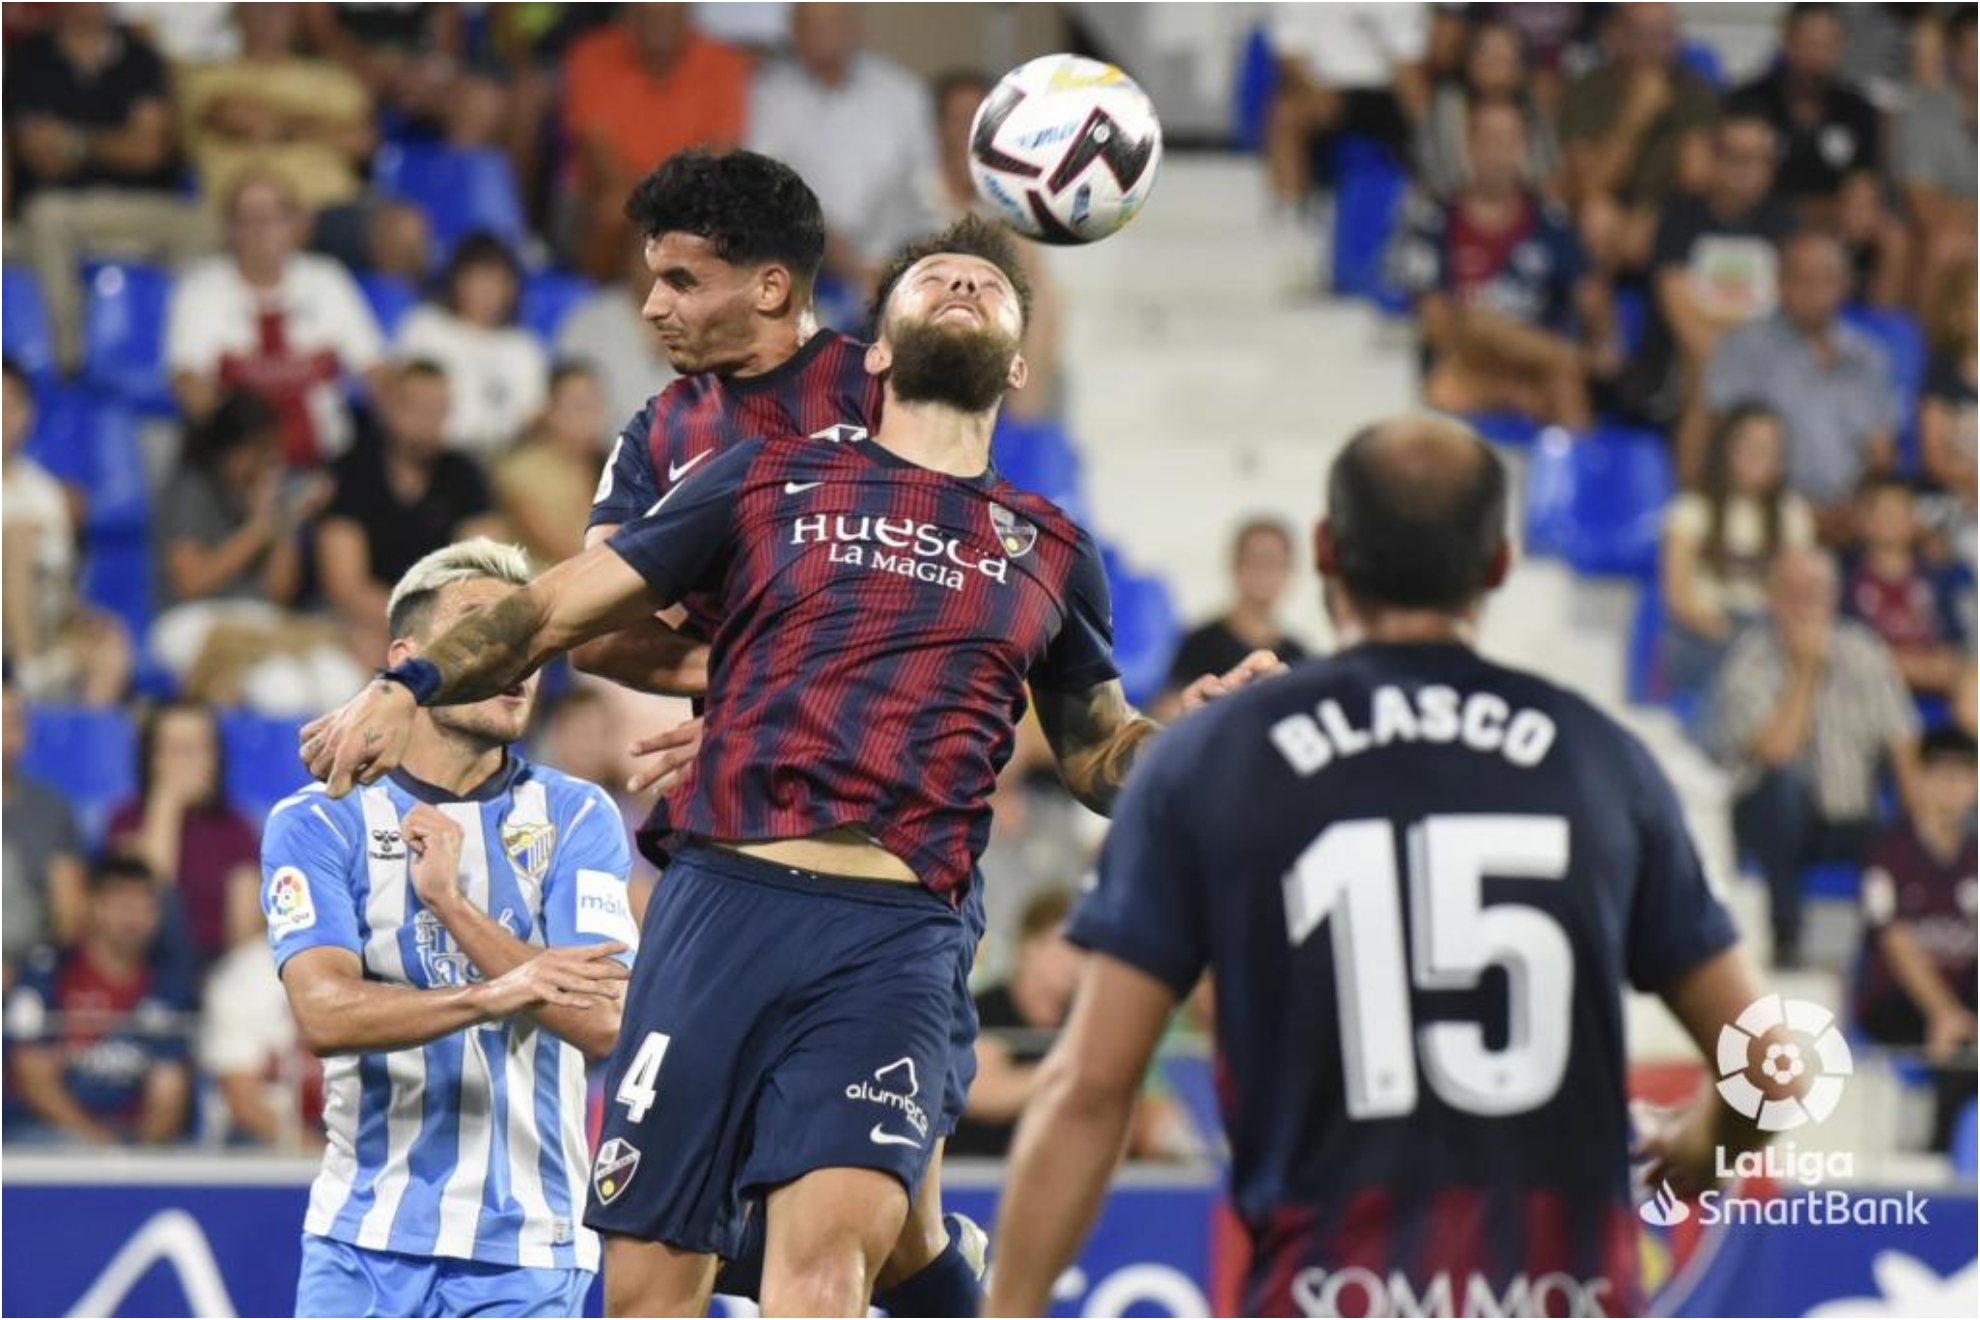 Los jugadores del Huesca saltan para despejar el baln en un lance del partido. /LALIGA